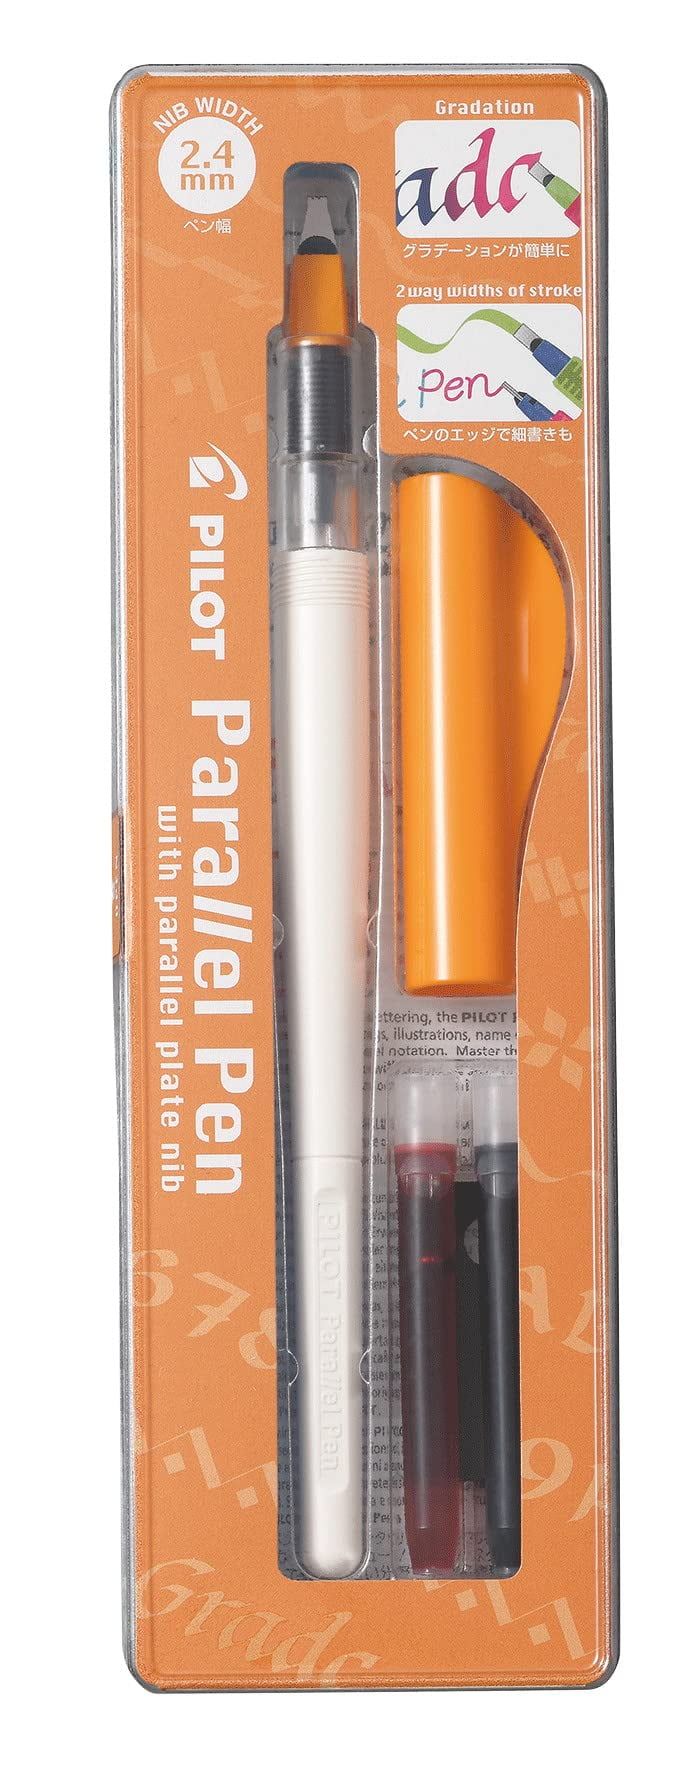 Pilot Parallel Pen 2.4mm